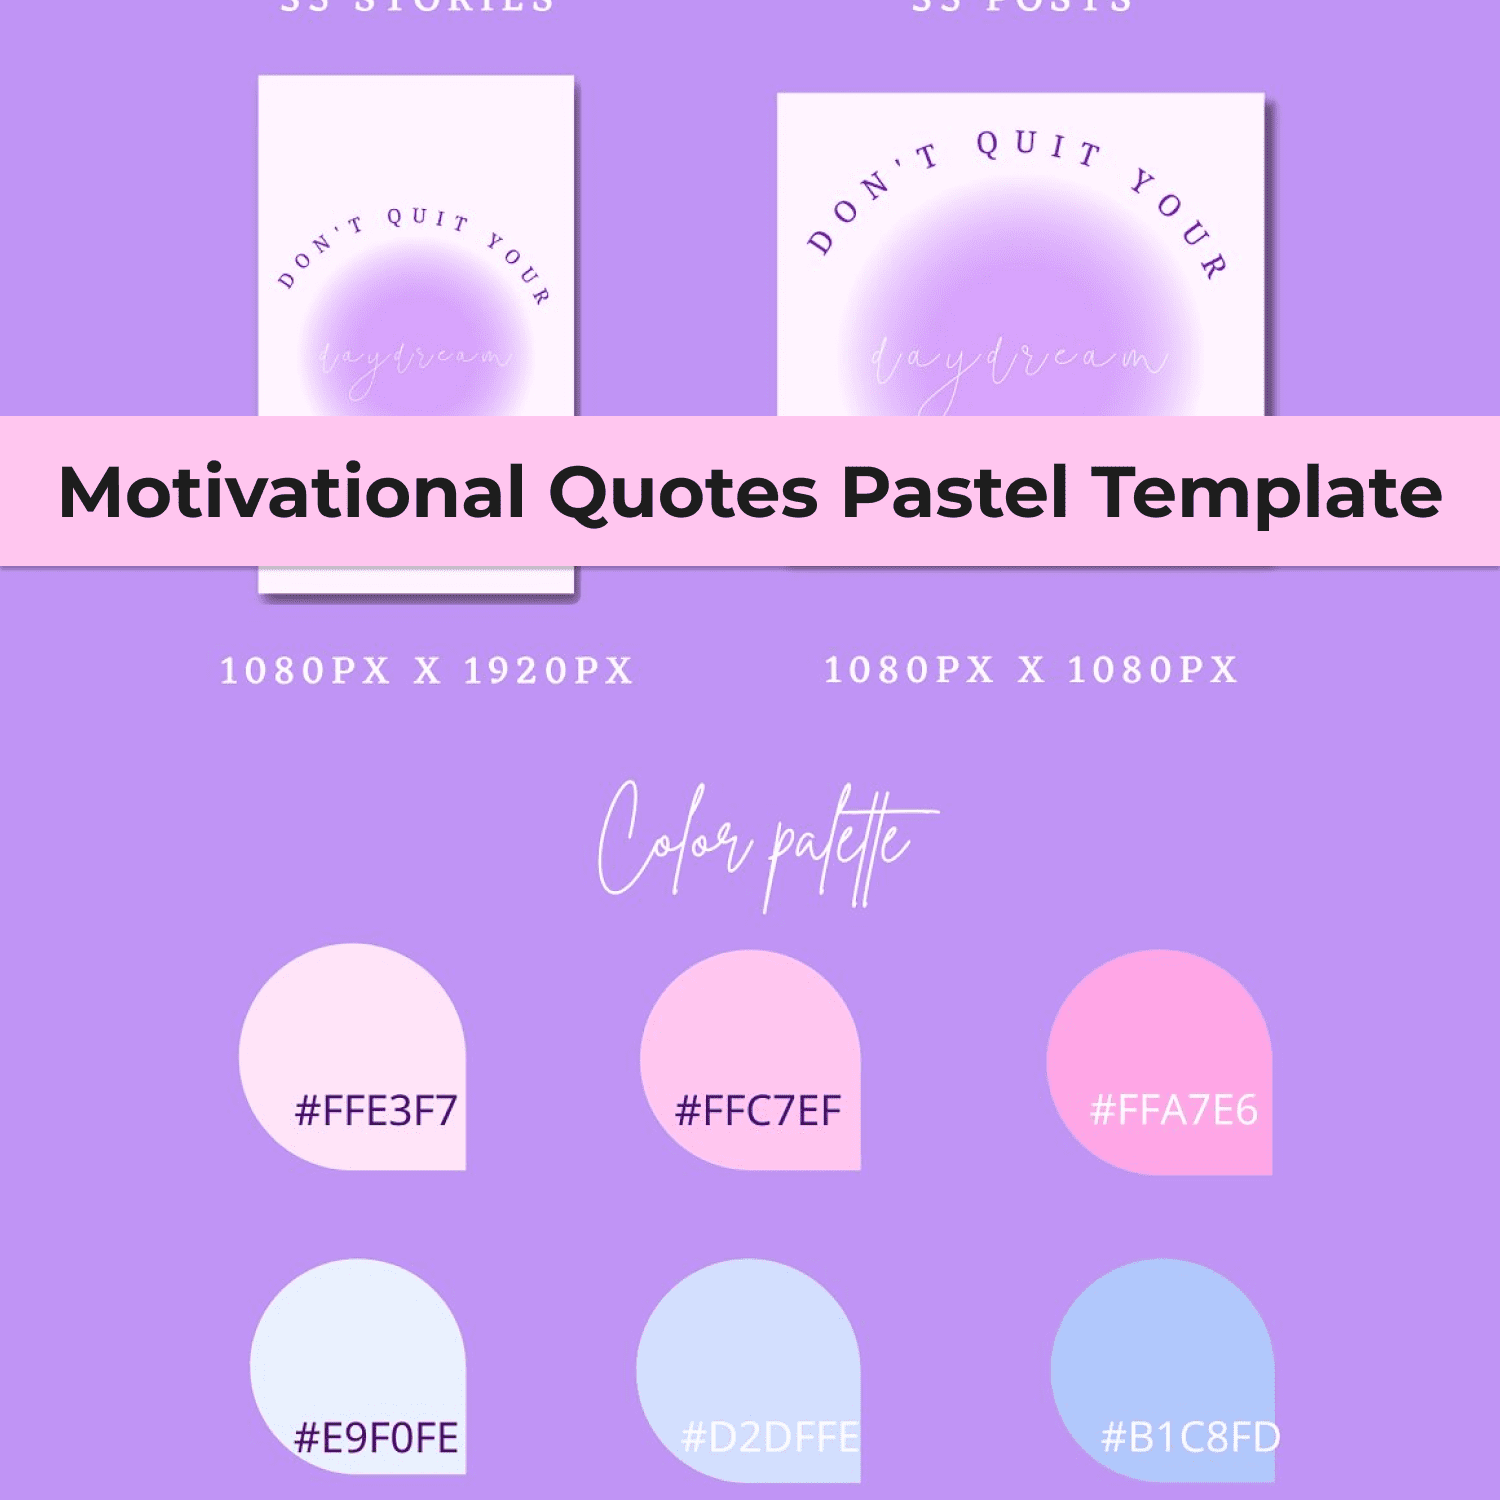 Motivational Quotes Pastel Template - Color Palette.